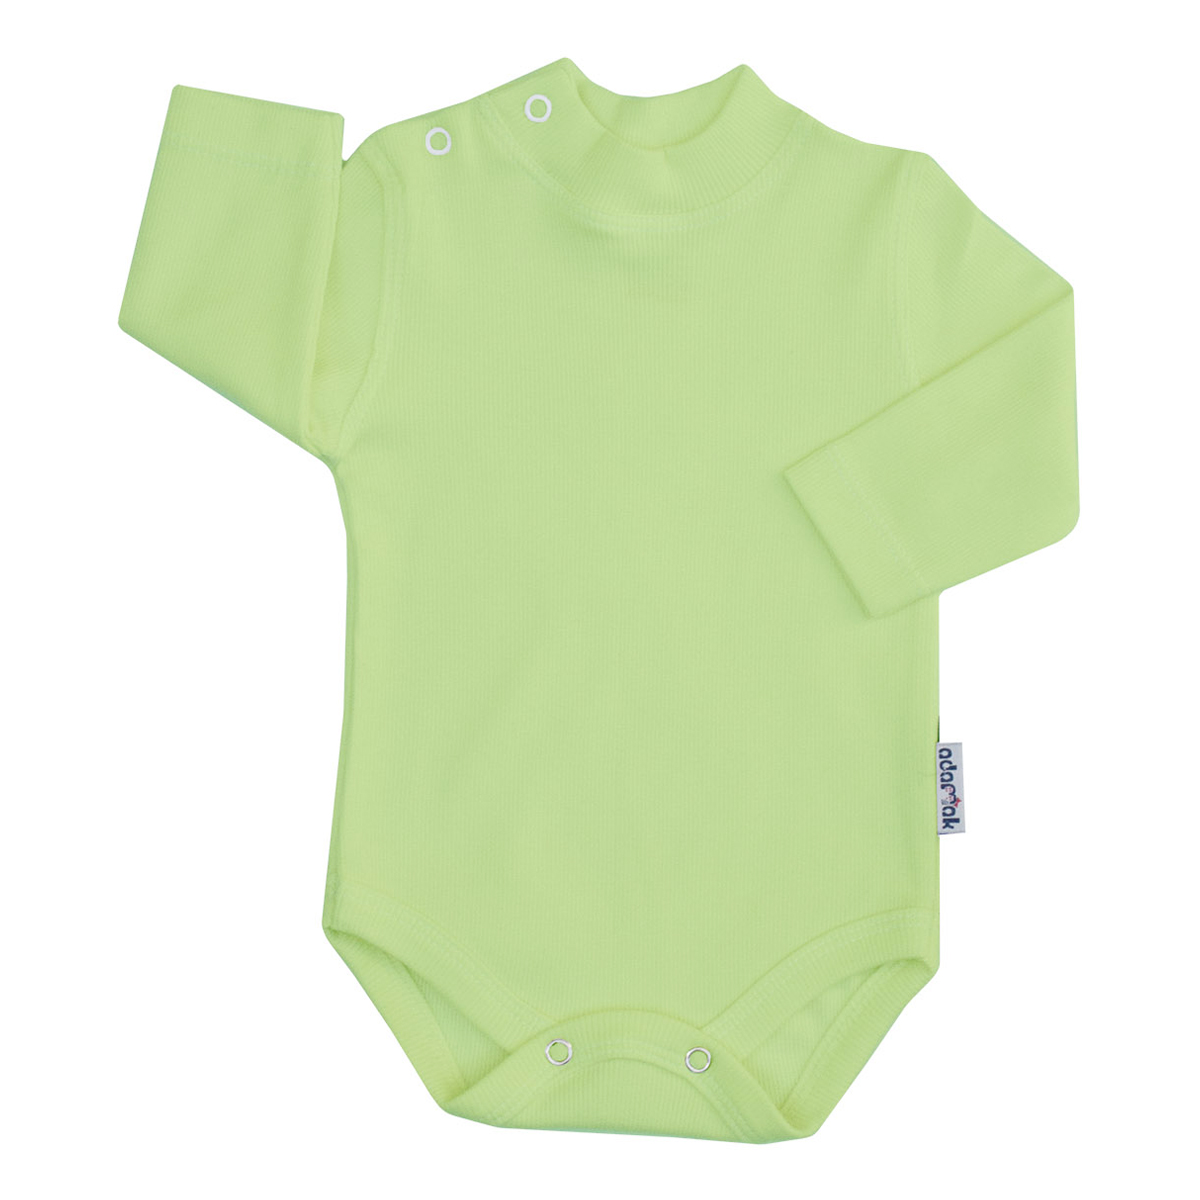 بادی آستین بلند نوزاد آدمک کد 176300 رنگ سبز روشن